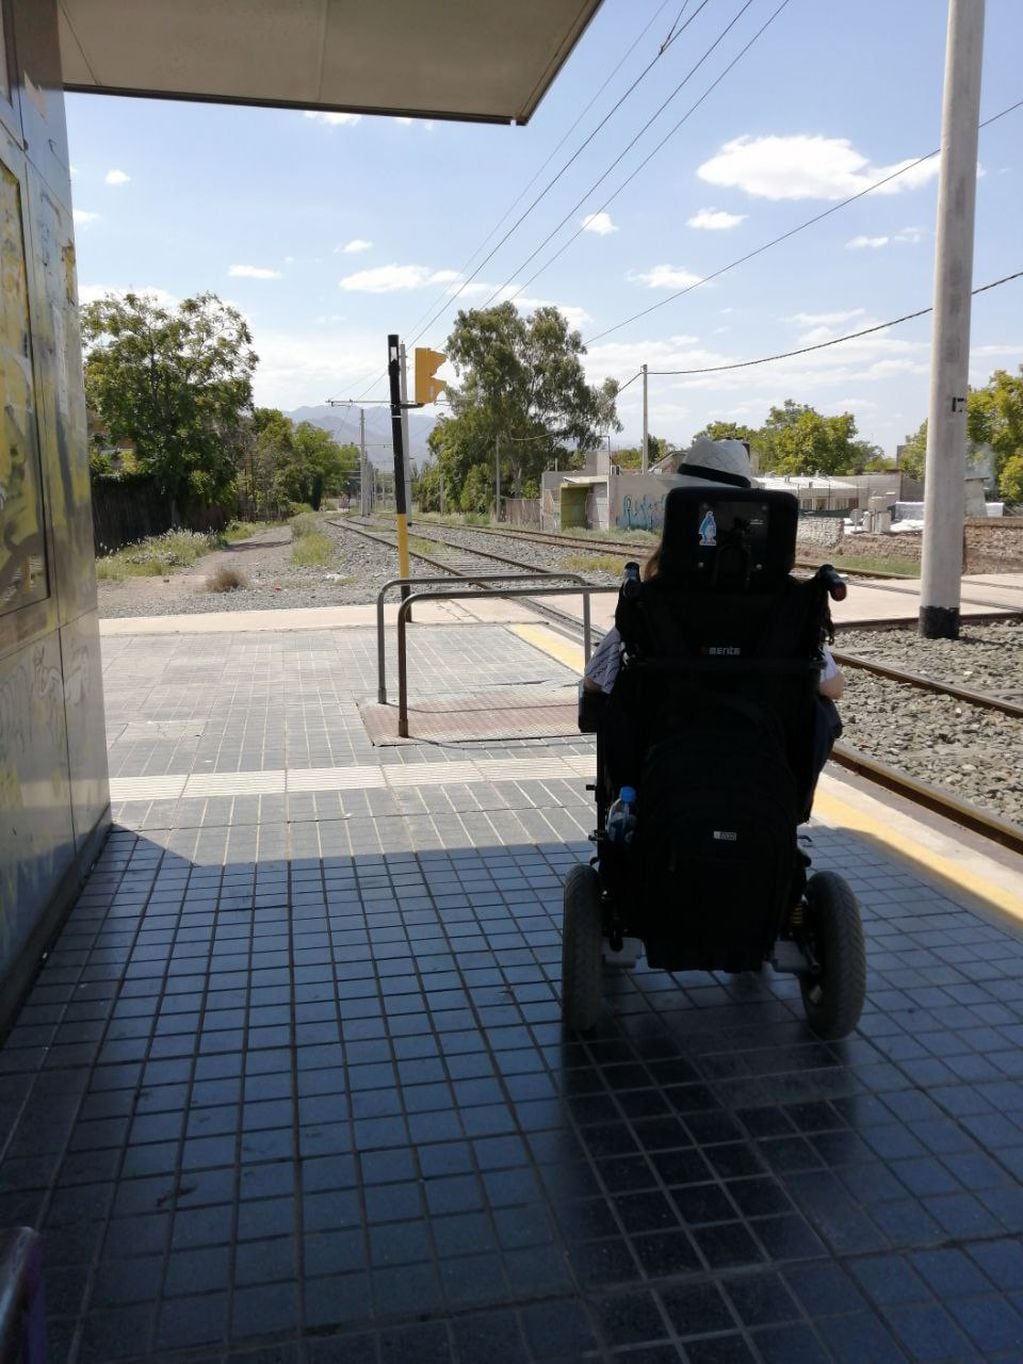 Valeria en la parada del Metrotranvía, transporte apto para personas con discapacidad y accesible. Aunque muchas veces las bajadas no estaban en condiciones y era complejo el retorno.